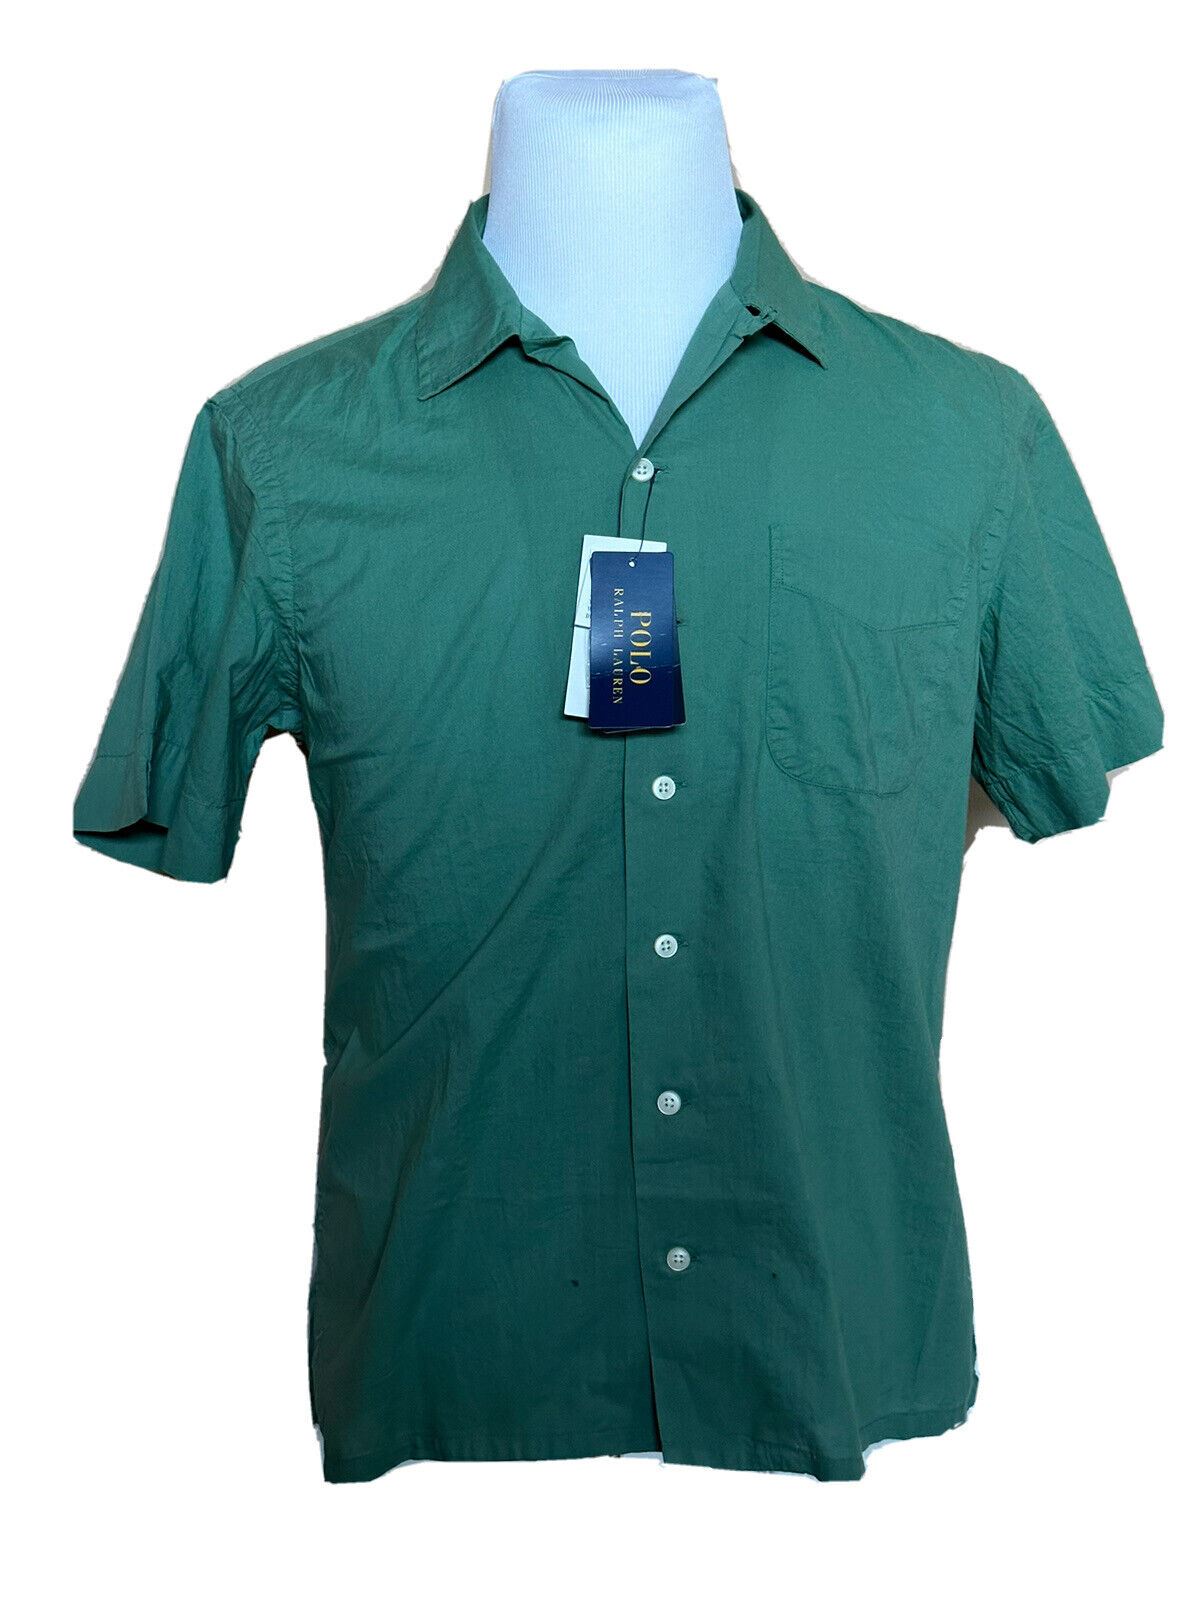 Мужская зеленая классическая рубашка с коротким рукавом NWT Polo Ralph Lauren среднего размера, производство Индия